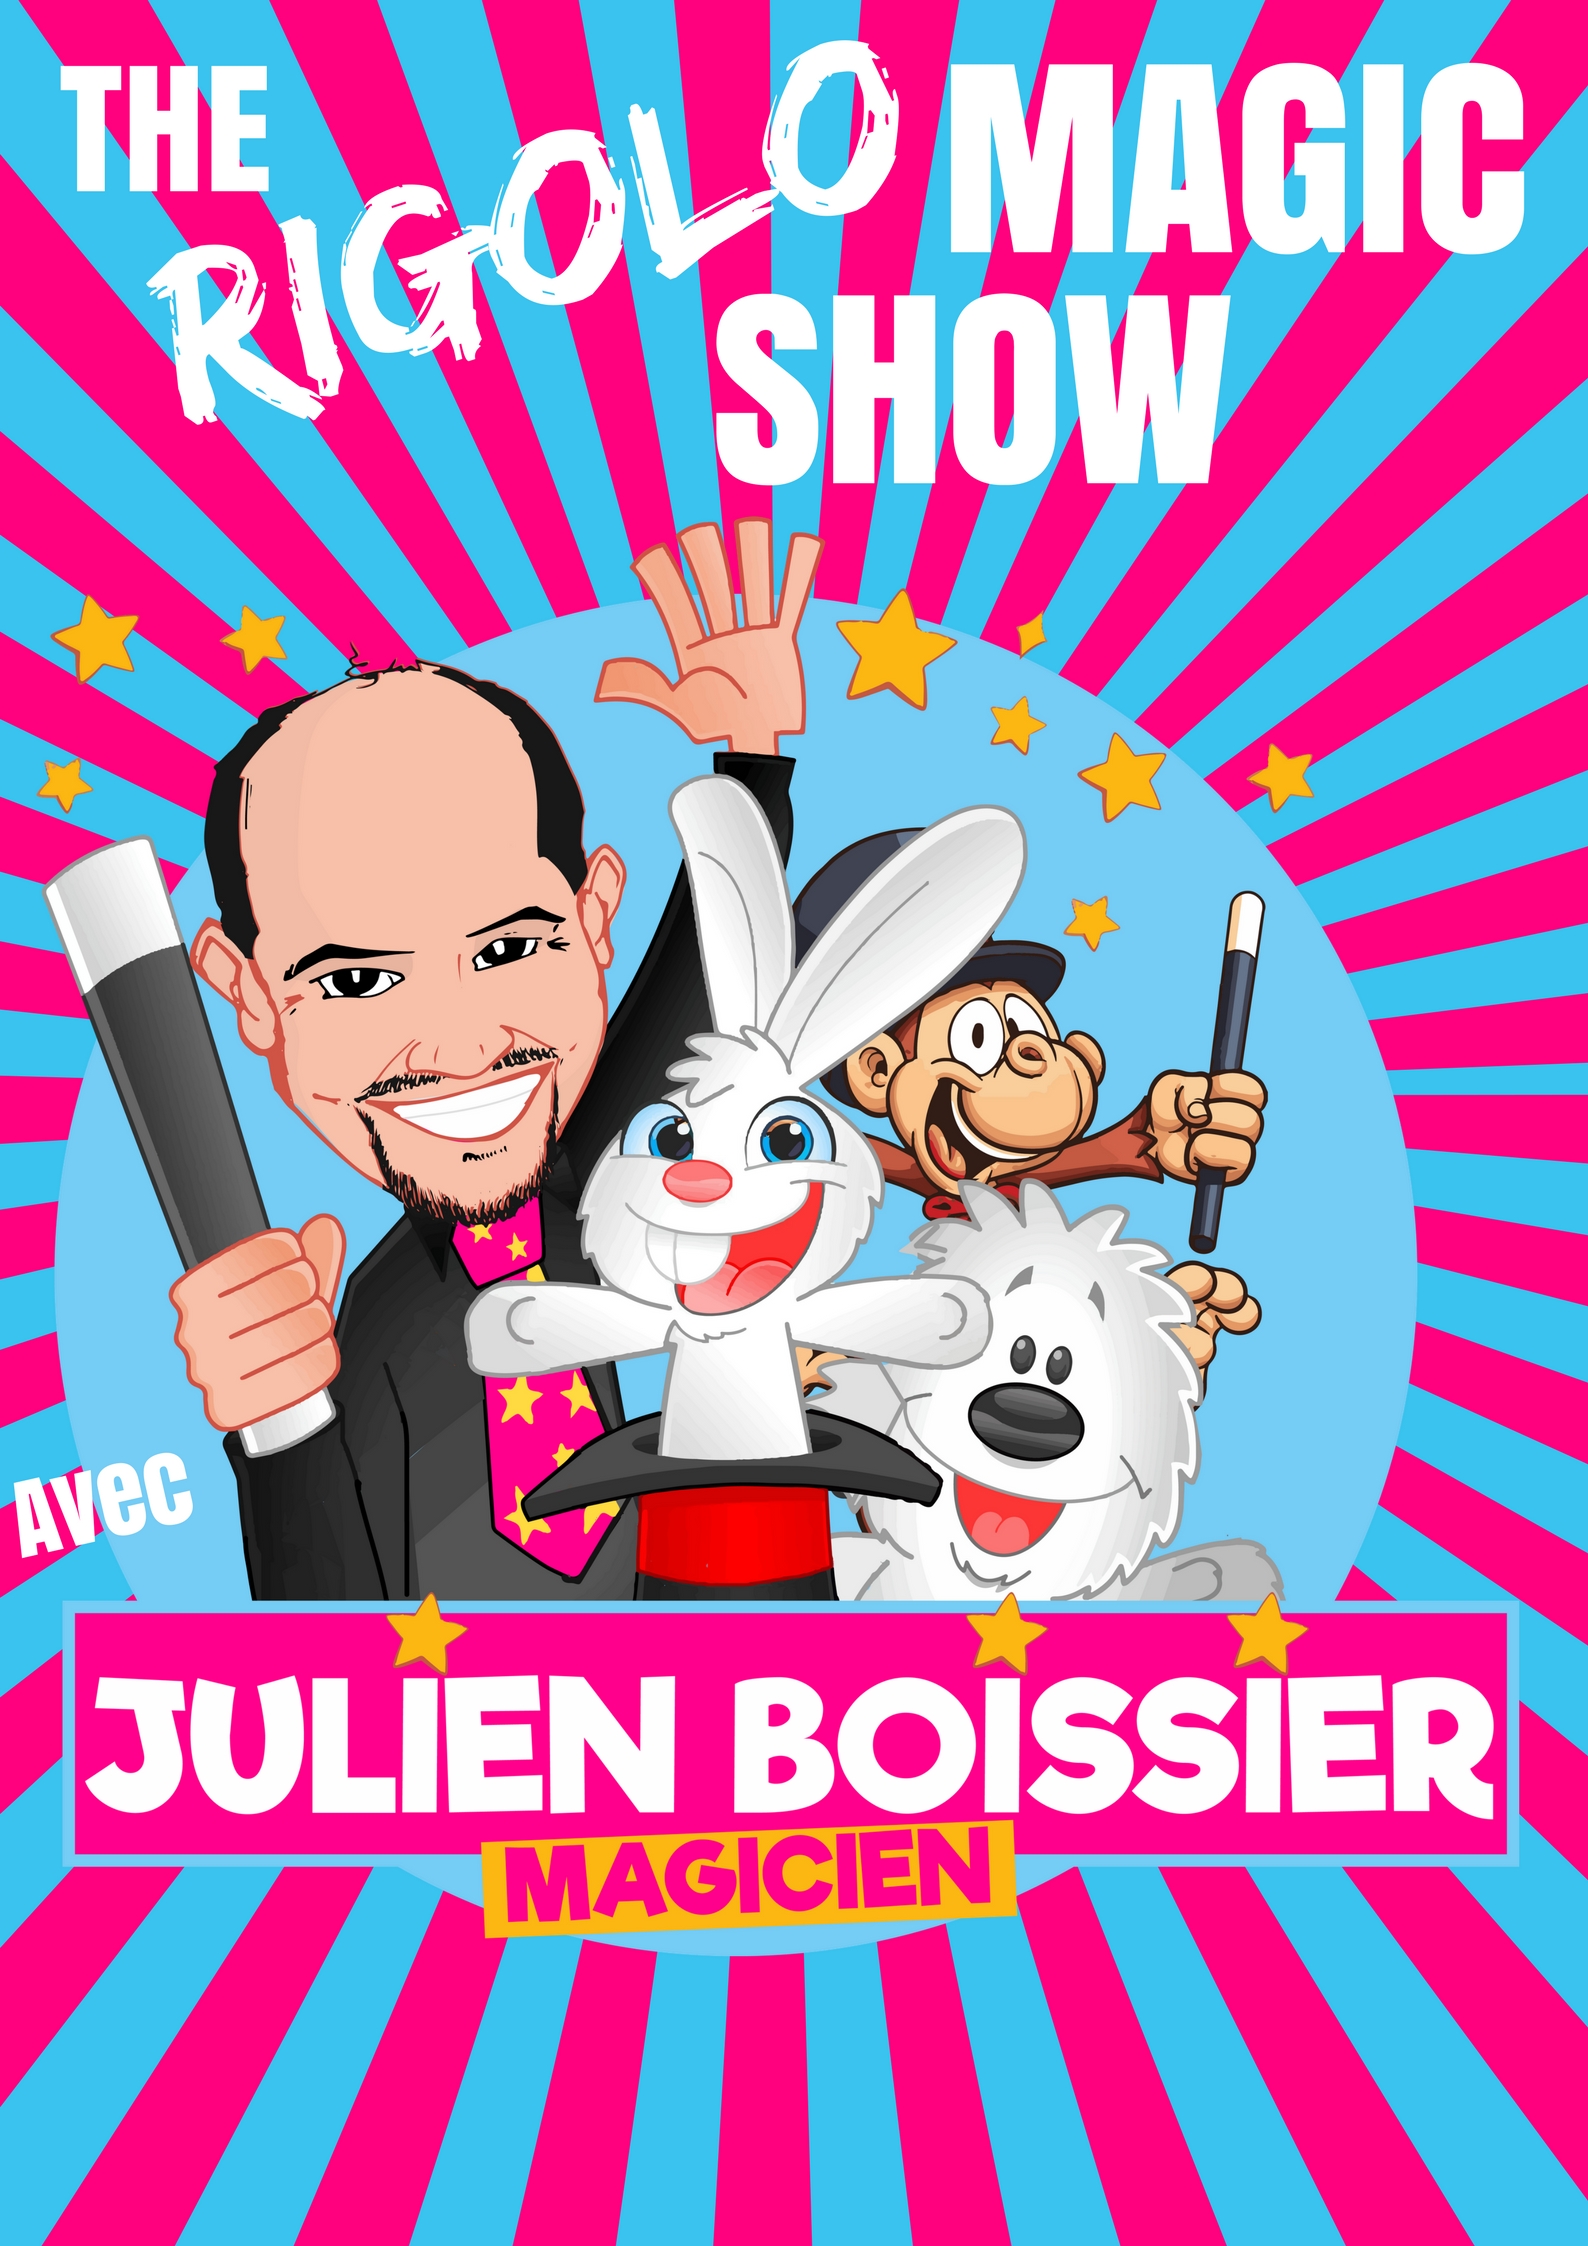 On a testé un anniversaire à la maison avec un magicien : Julien Boissier !